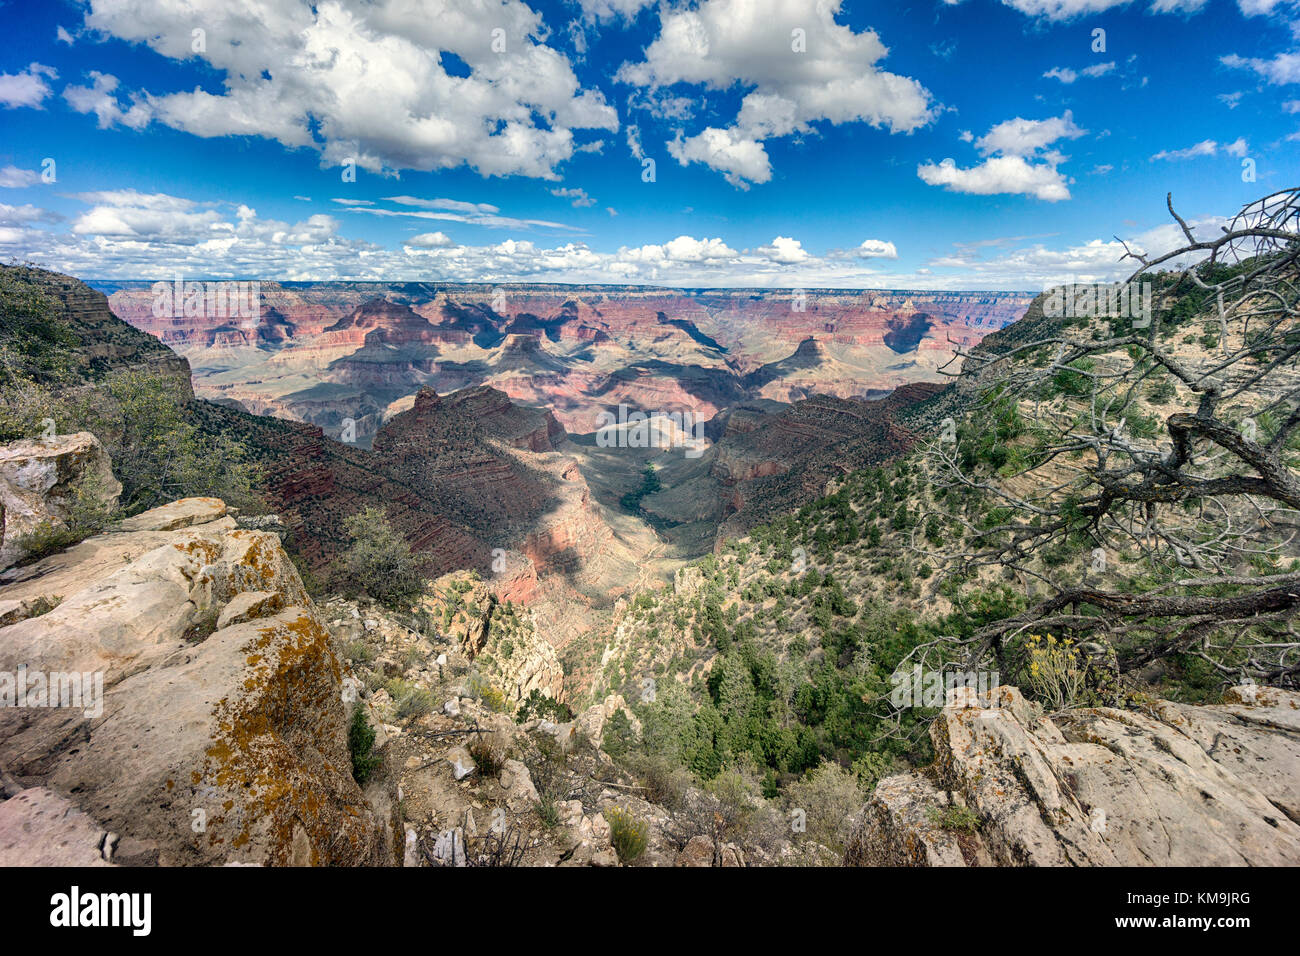 El parque nacional del Gran Cañón con vistas al paisaje de Arizona con el río colorado en la distancia. Bandas de capas de roca roja revelando millones de años de ge Foto de stock